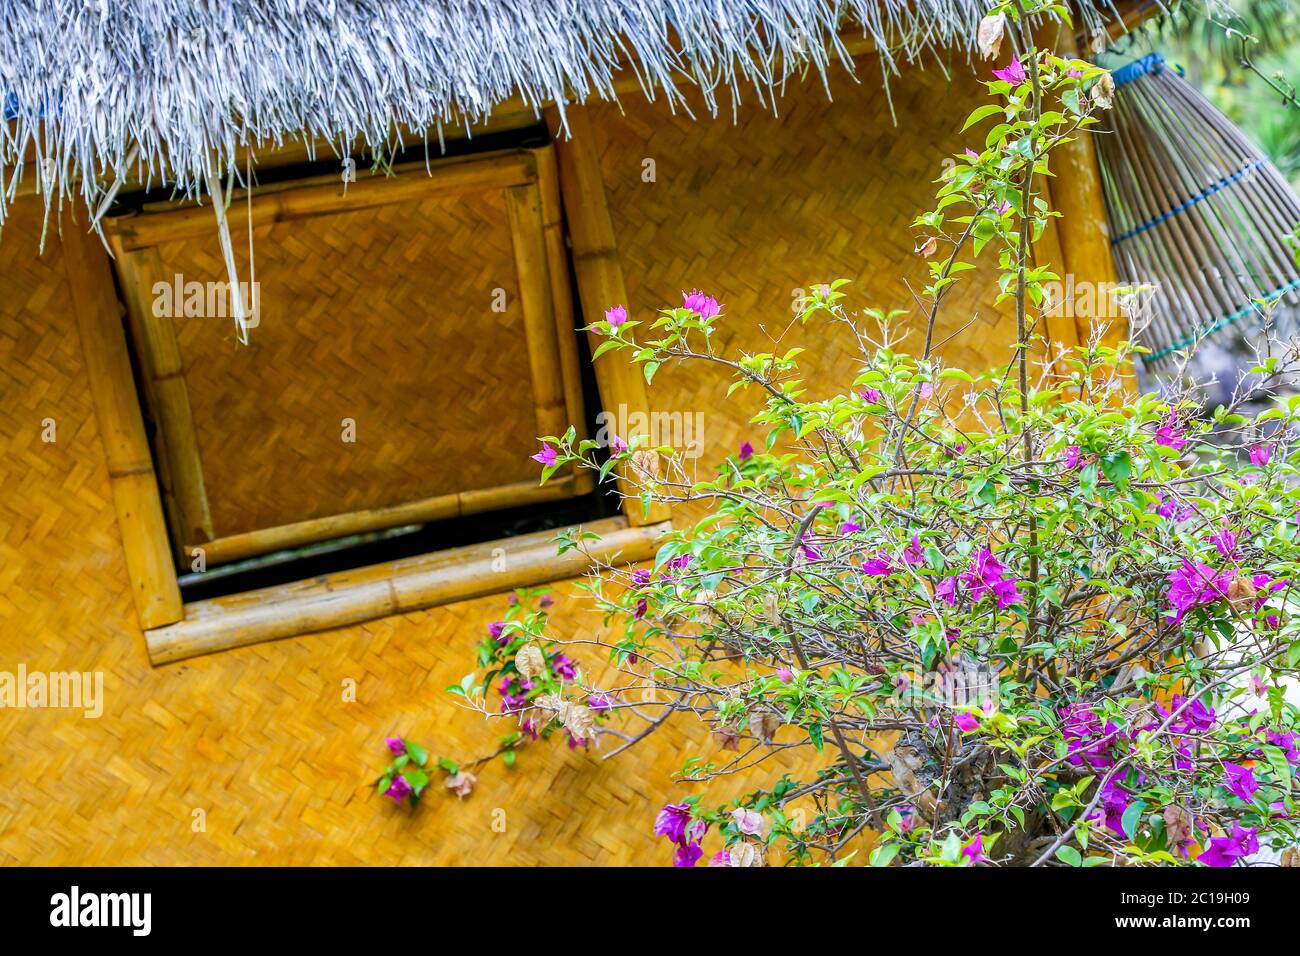 Vue inclinée d'une hutte en rotin avec un toit de chaume bleu, face à un Bush à fleurs luxuriantes. Banque D'Images